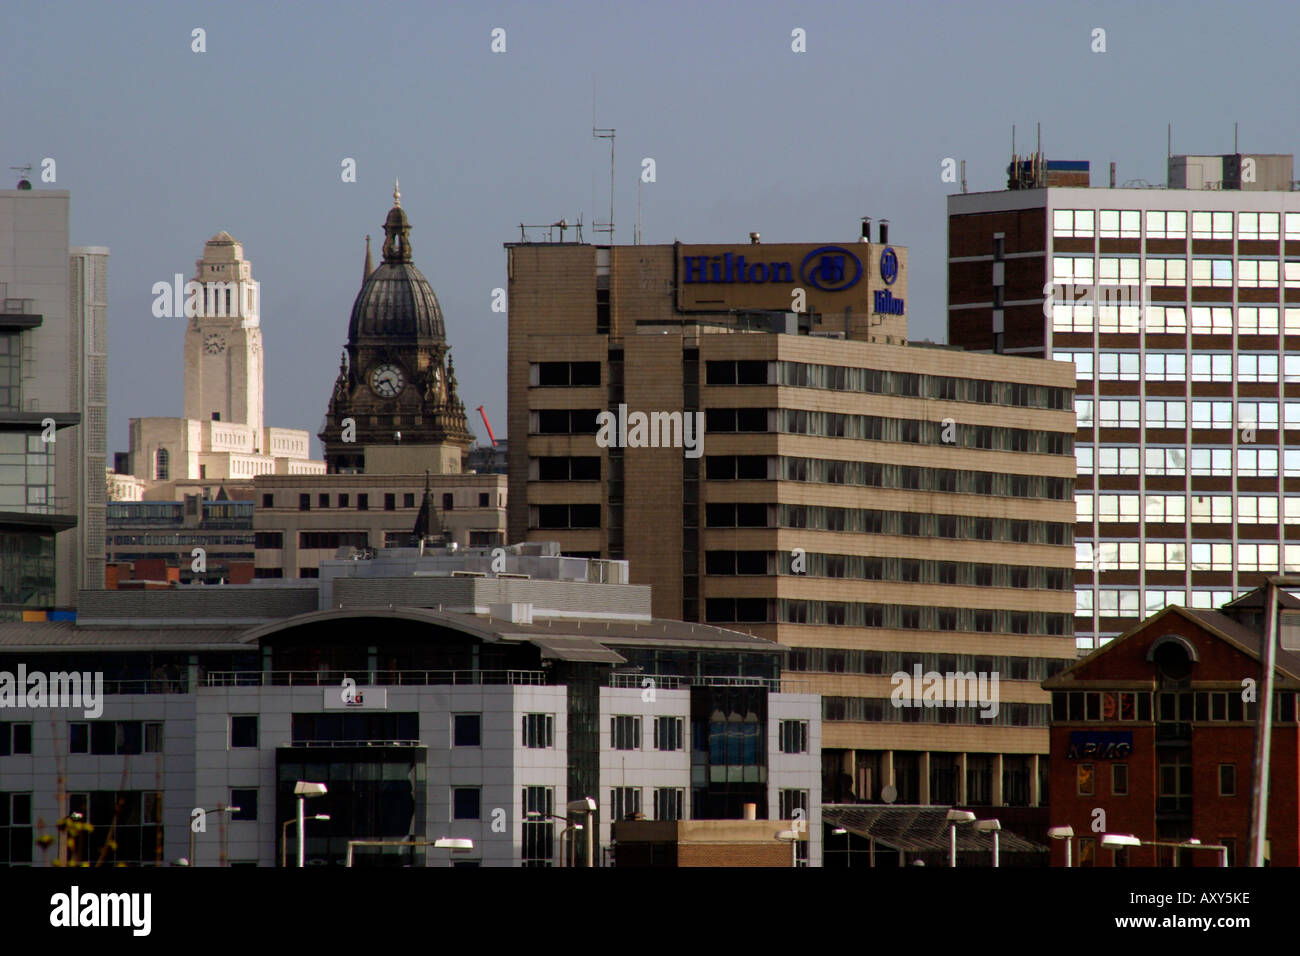 Toits de Leeds Dewsbury Road Towers de Leeds Hown Hall et University clairement visibles Banque D'Images